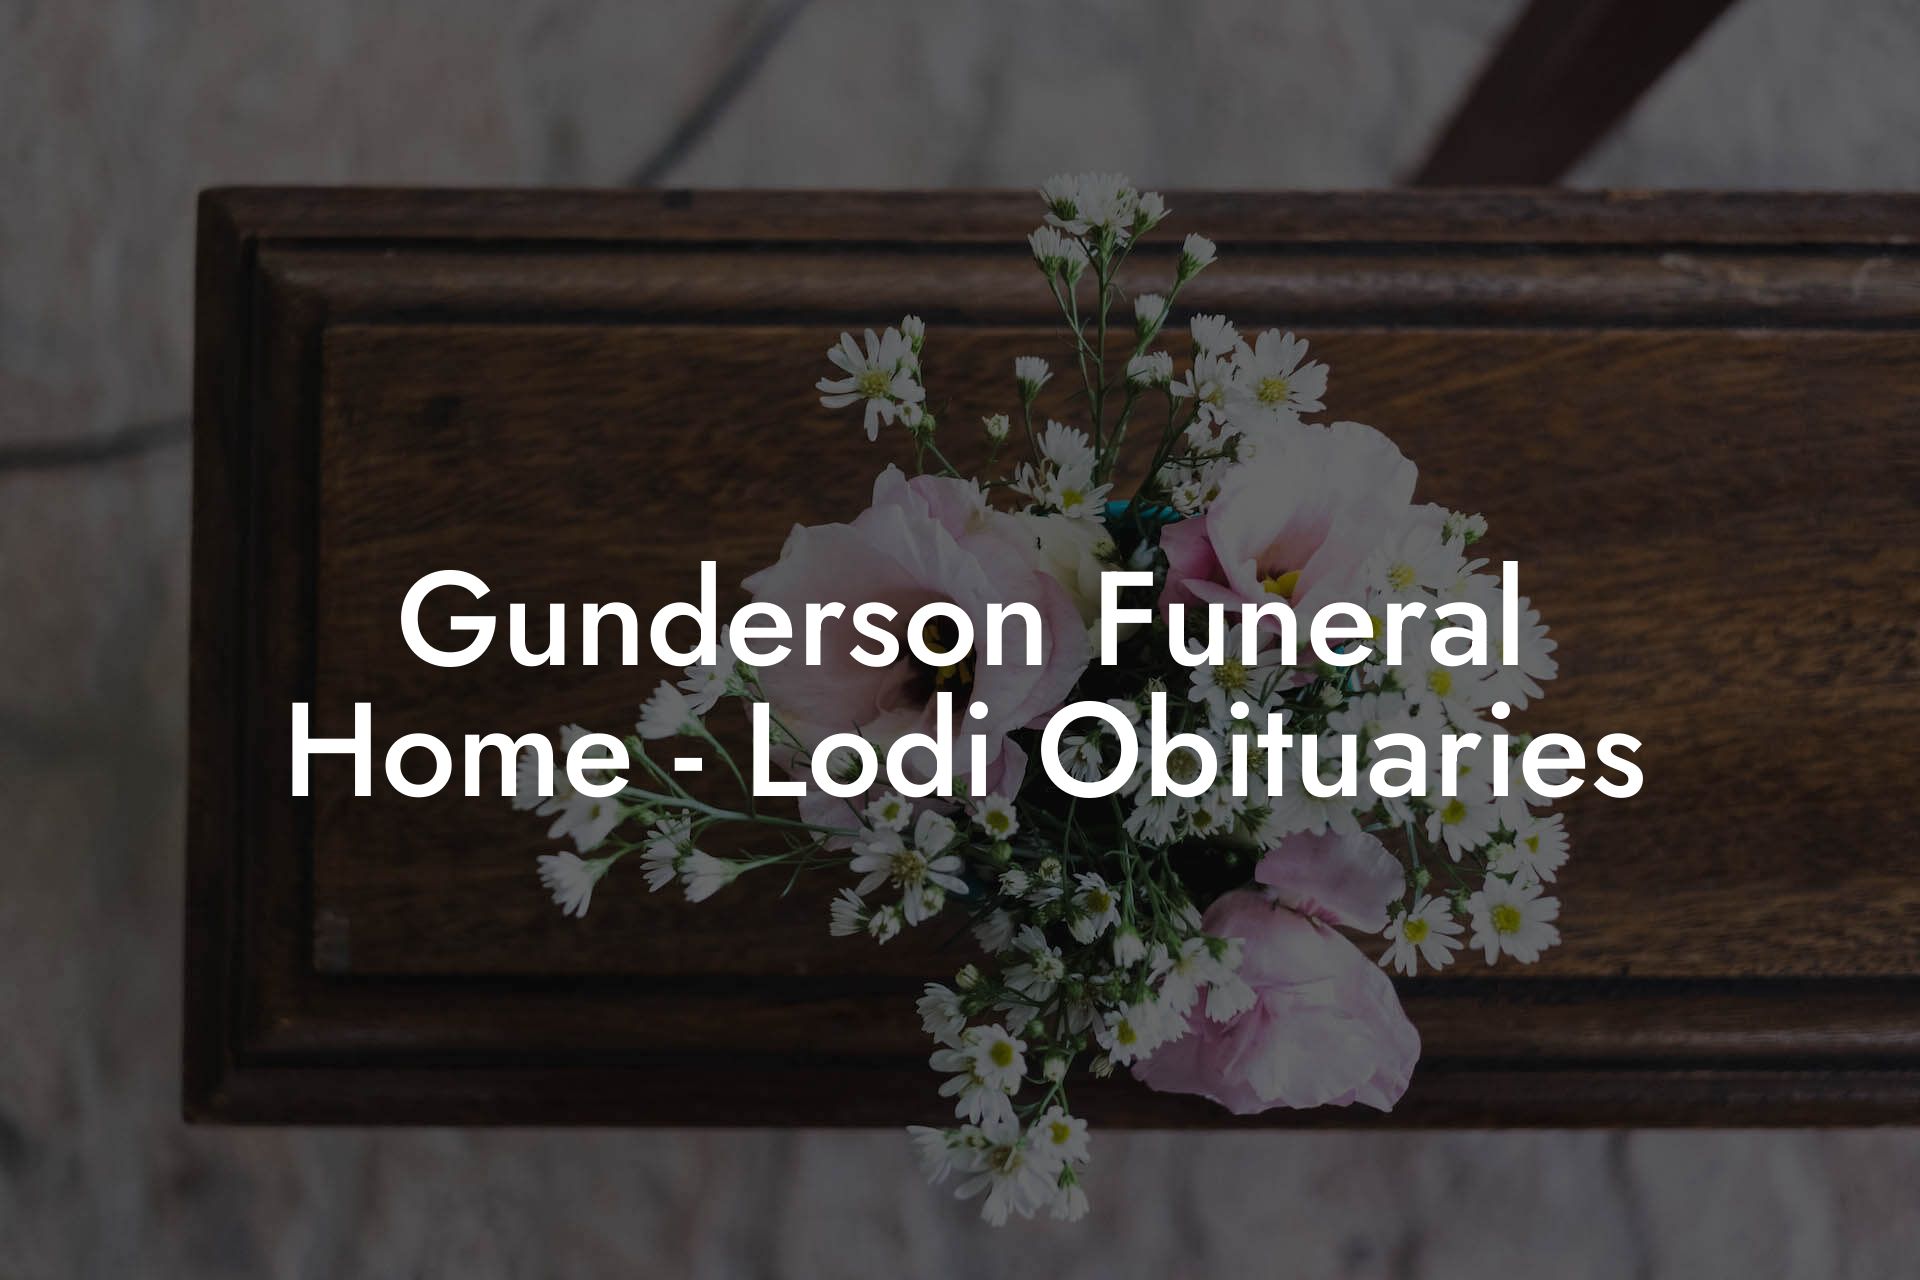 Gunderson Funeral Home - Lodi Obituaries